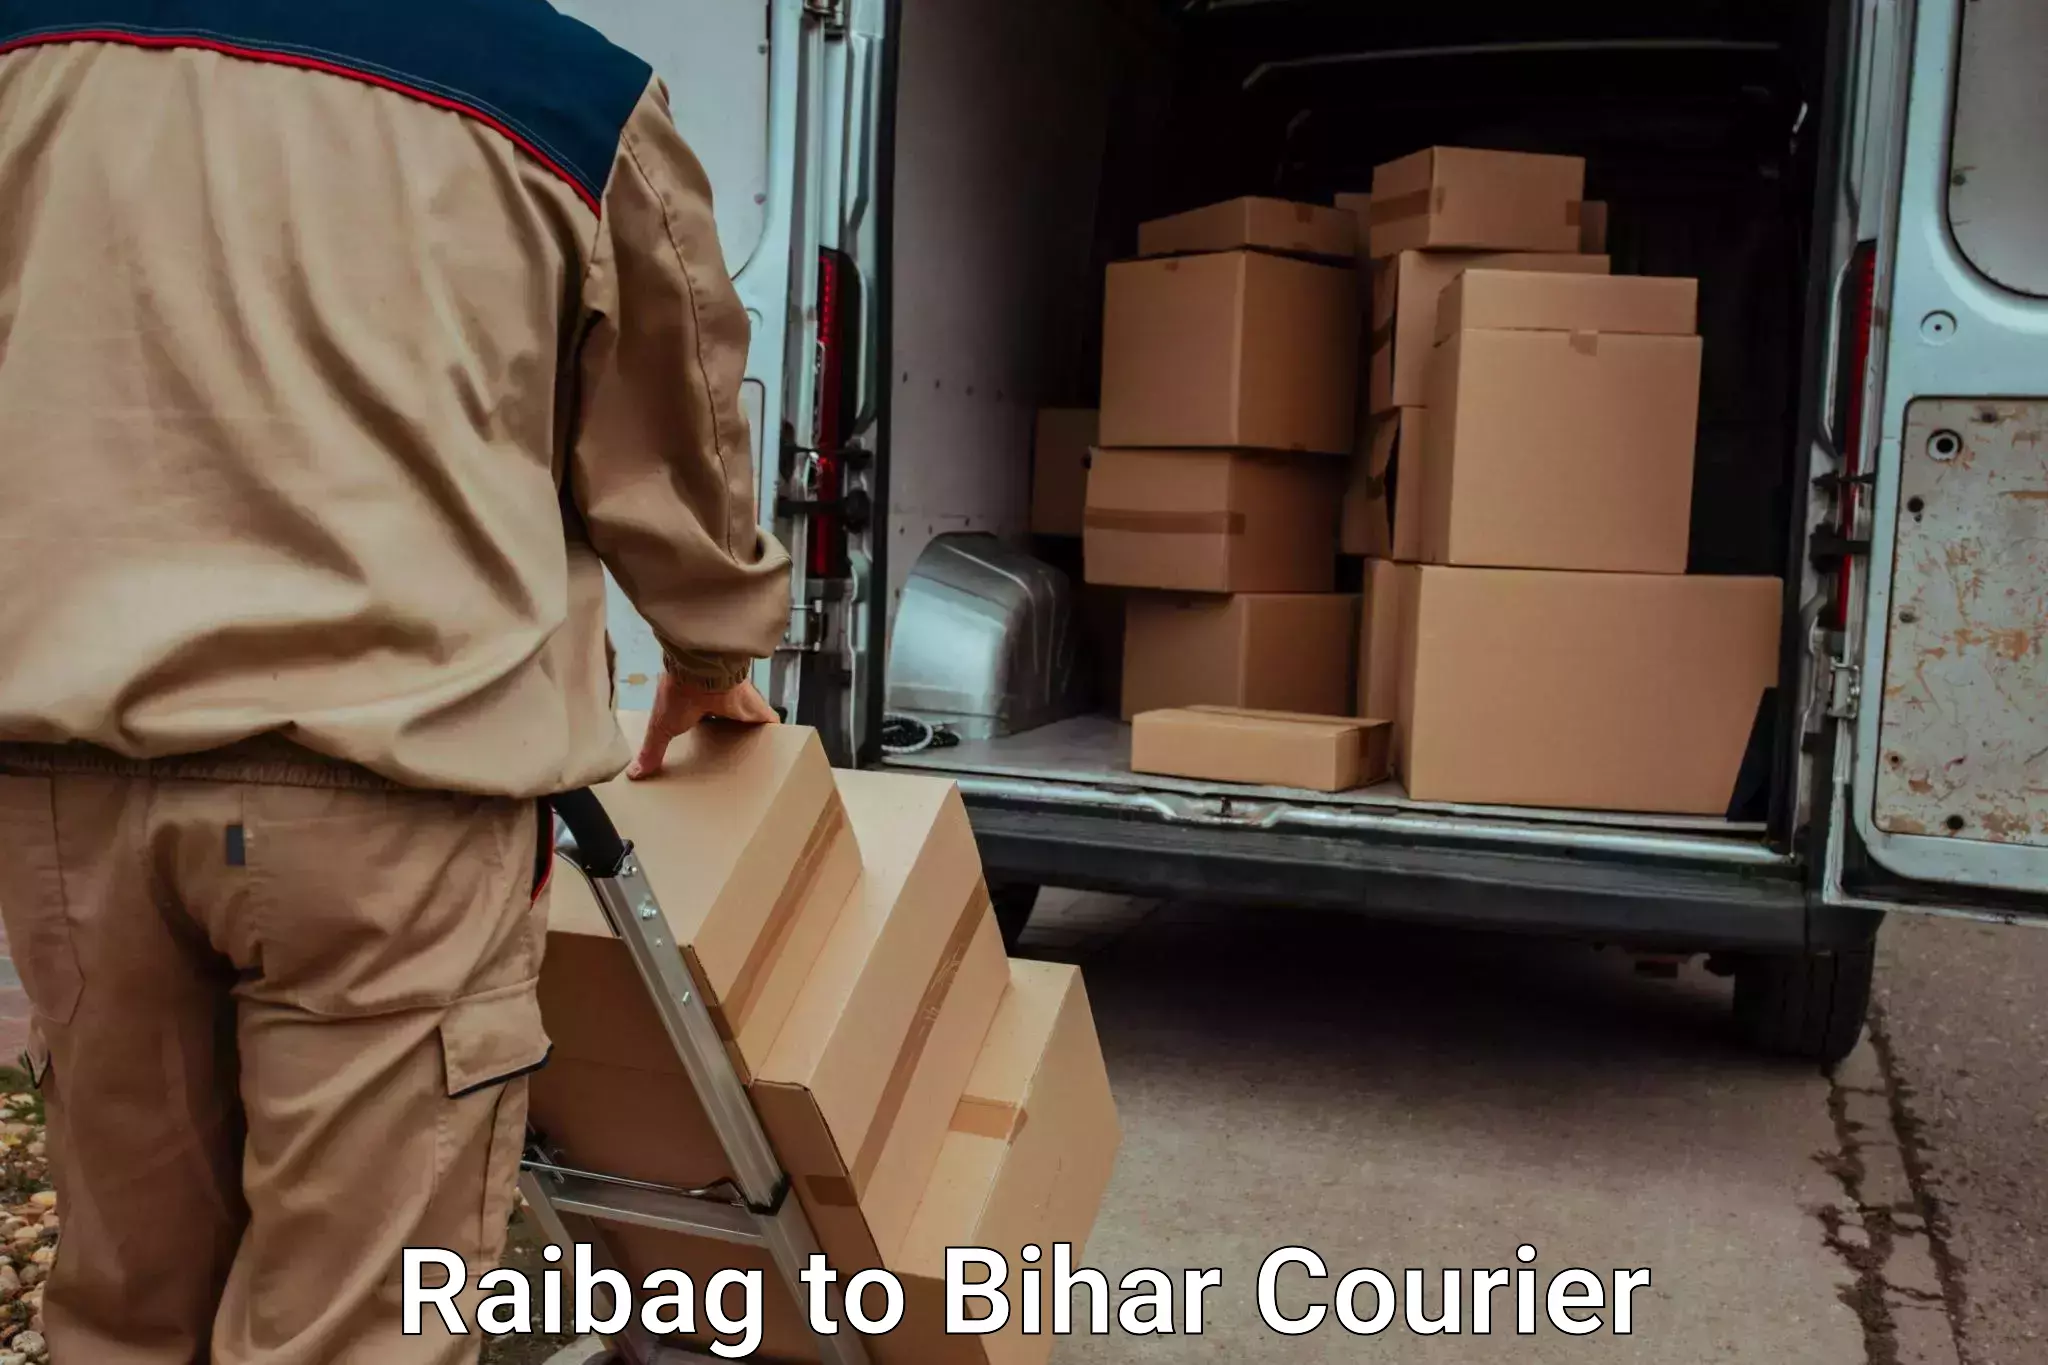 Luggage shipment specialists Raibag to Hazrat Jandaha